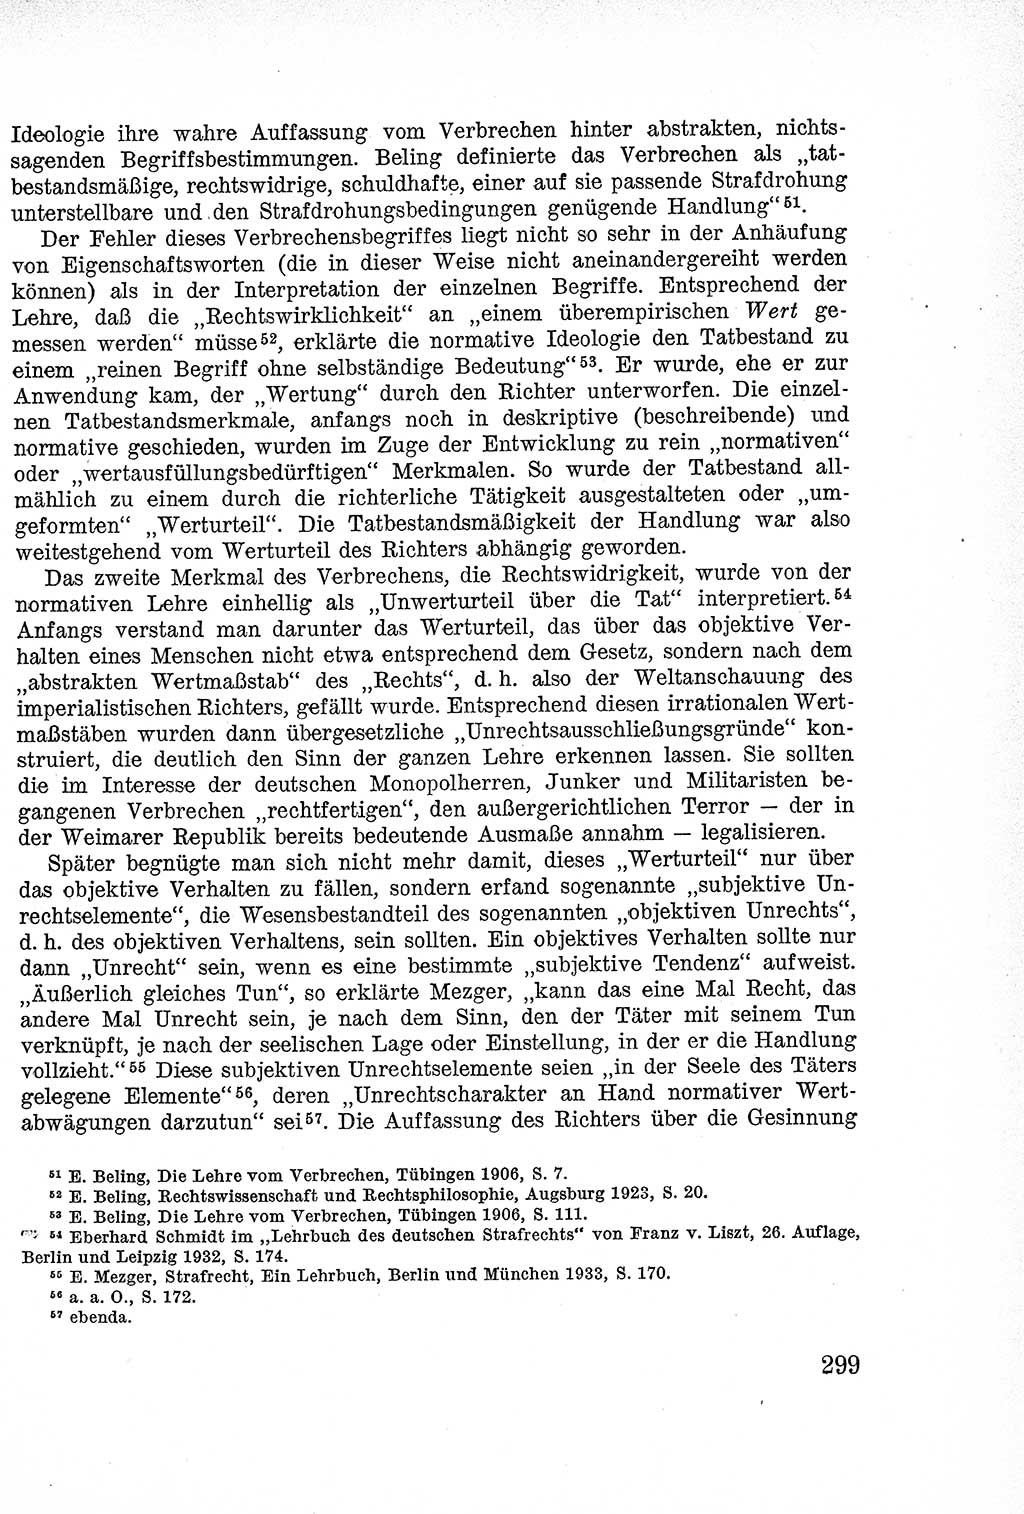 Lehrbuch des Strafrechts der Deutschen Demokratischen Republik (DDR), Allgemeiner Teil 1957, Seite 299 (Lb. Strafr. DDR AT 1957, S. 299)